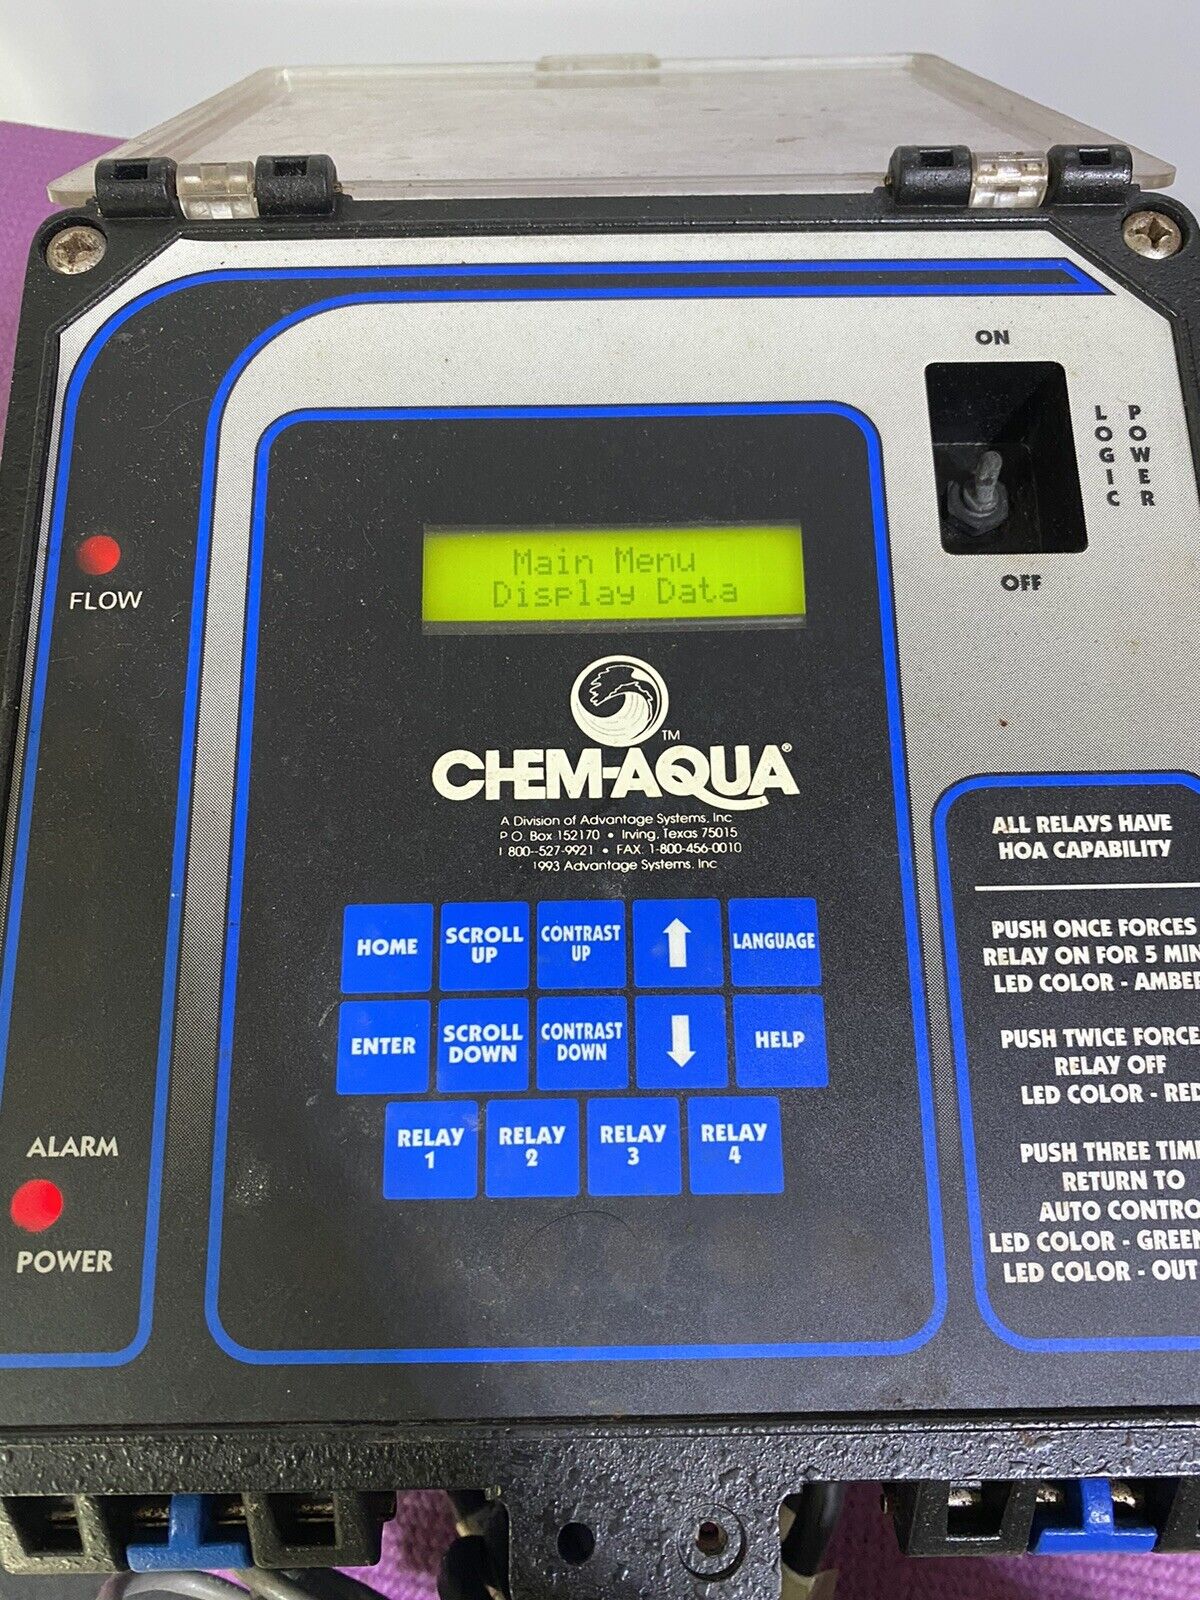 Advatage Chem-aqua Pump Controller